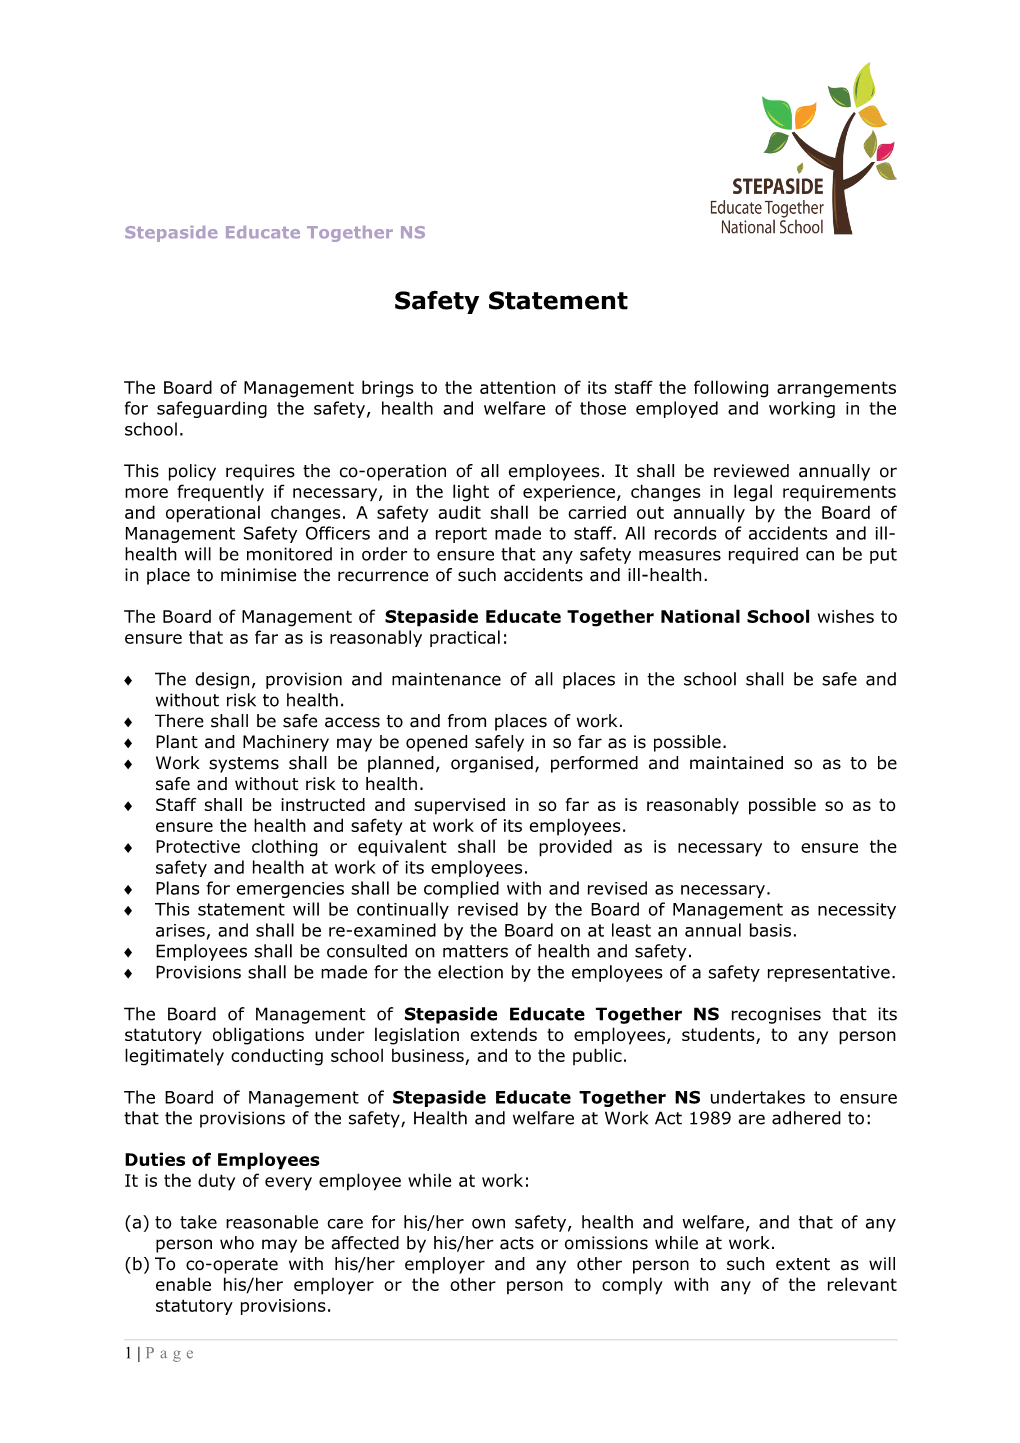 Safety Statement s1